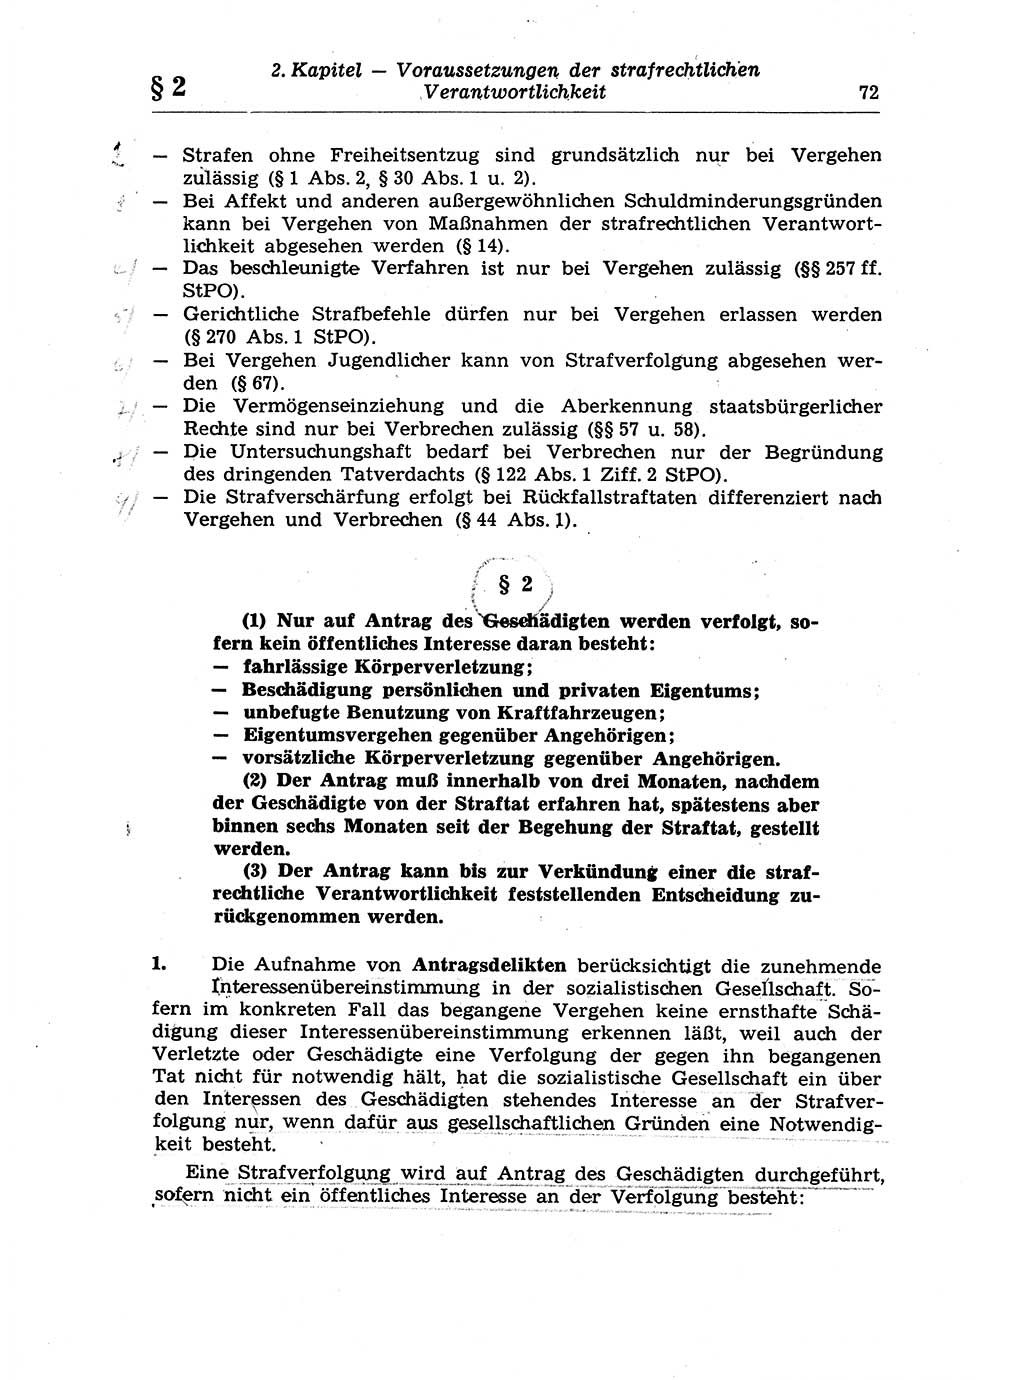 Strafrecht der Deutschen Demokratischen Republik (DDR), Lehrkommentar zum Strafgesetzbuch (StGB), Allgemeiner Teil 1970, Seite 72 (Strafr. DDR Lehrkomm. StGB AT 1970, S. 72)